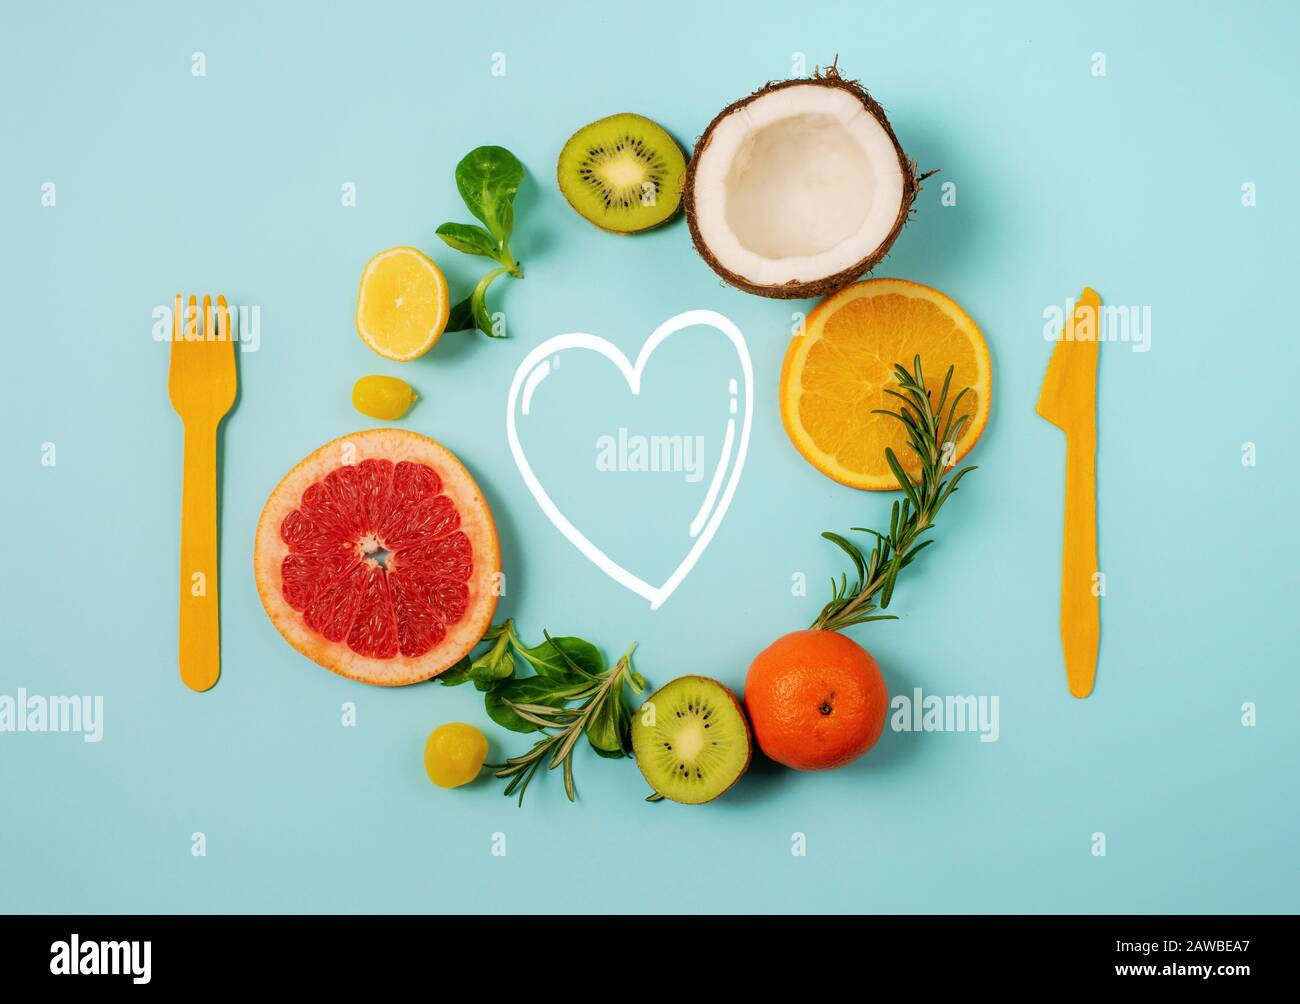 Composizione di agrumi, arancio e limone, cocco, kiwi su sfondo ciano Foto Stock